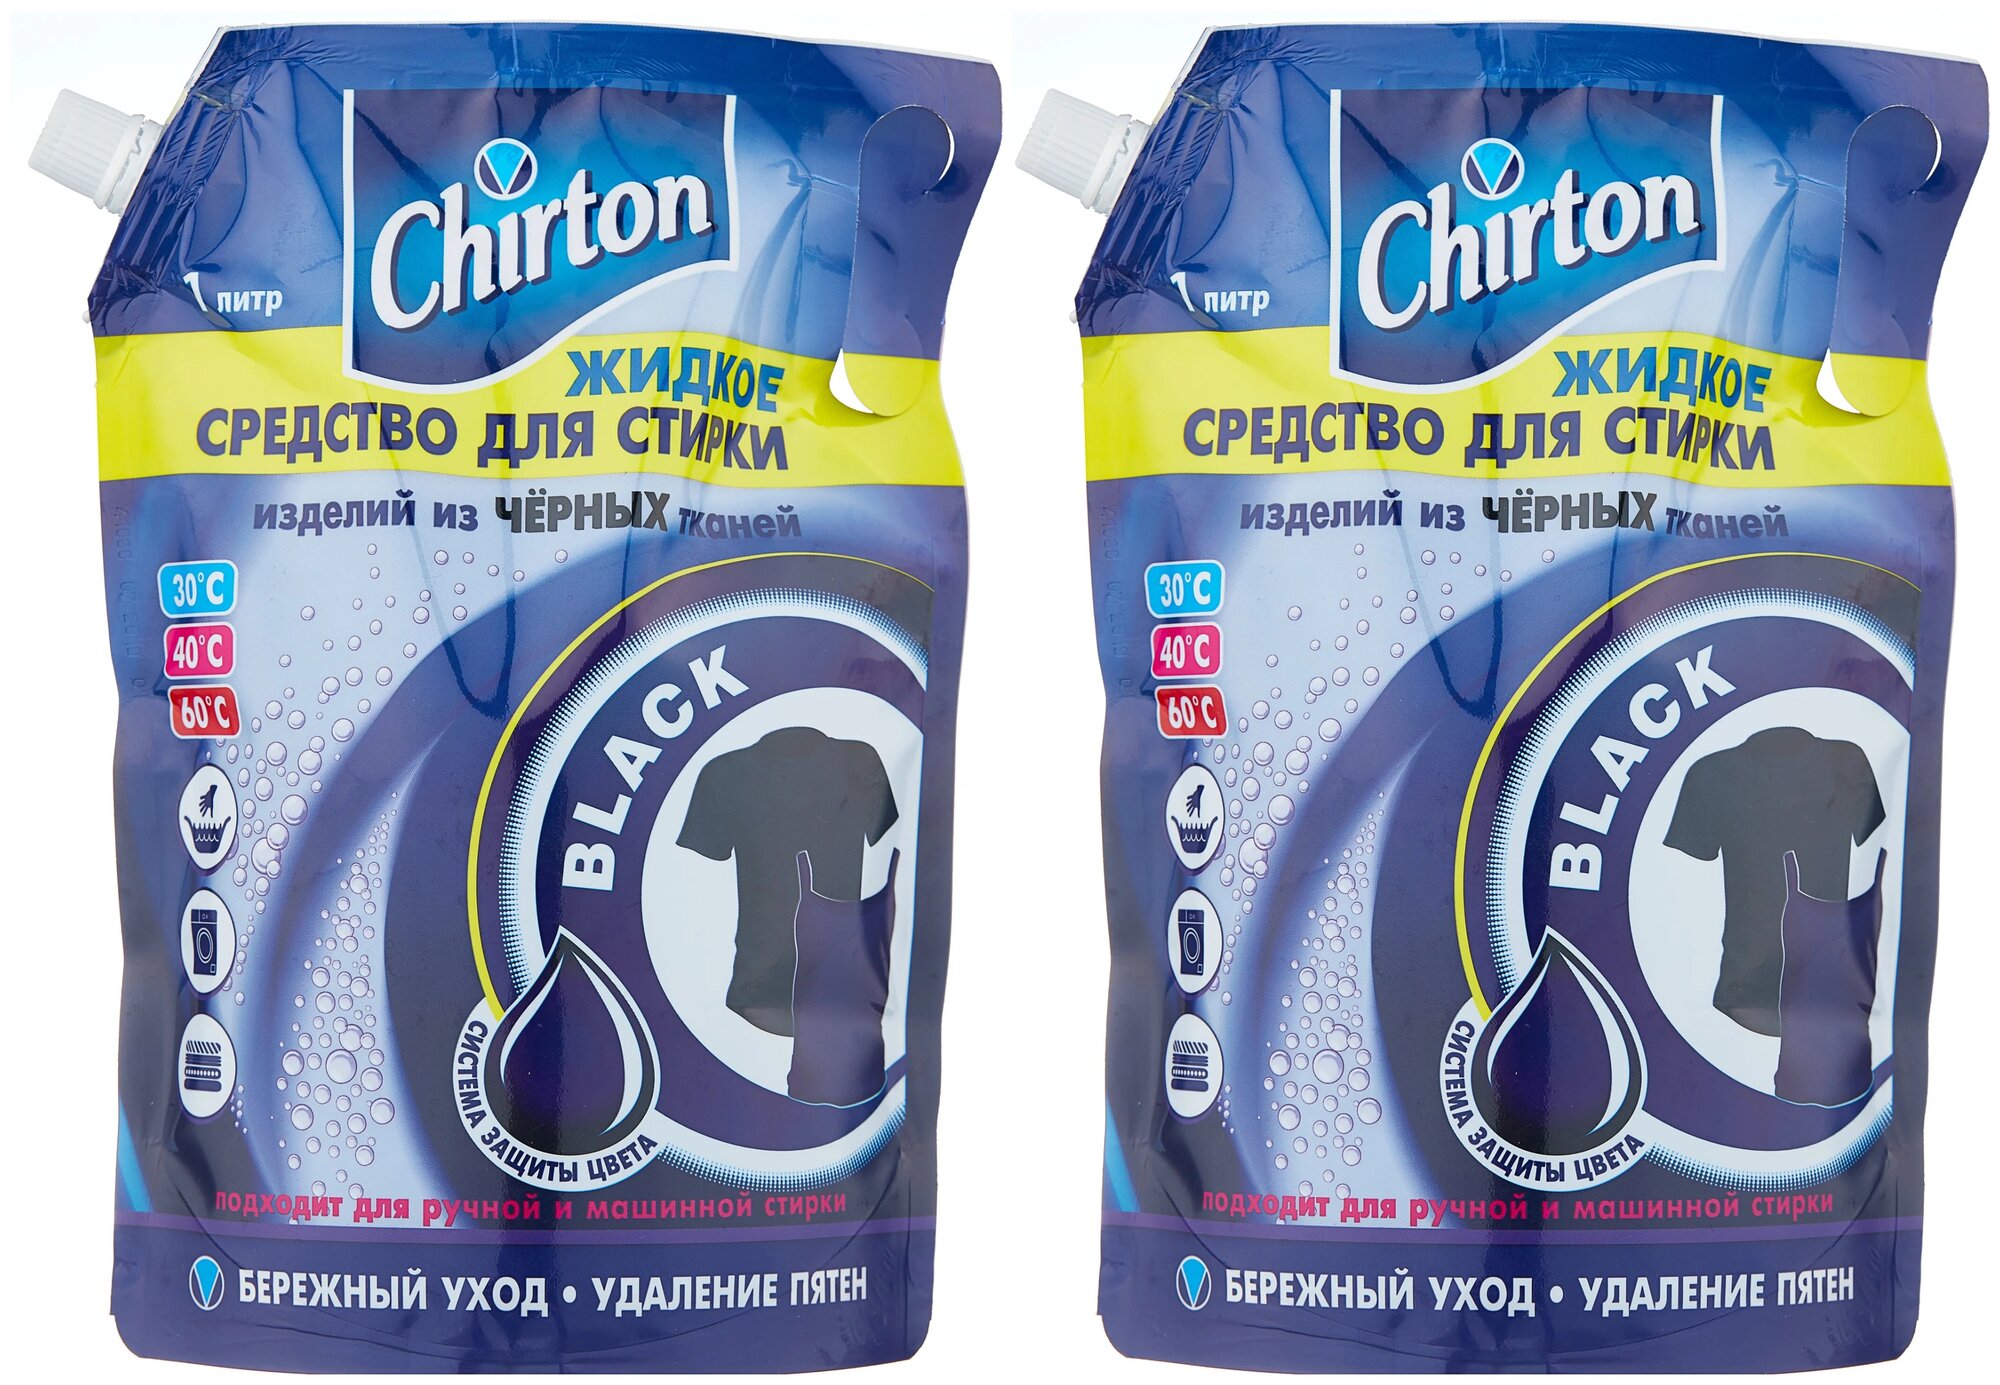 Средство жидкое для стирки Chirton Для черных тканей 1 литр дой-пак х 2 шт.